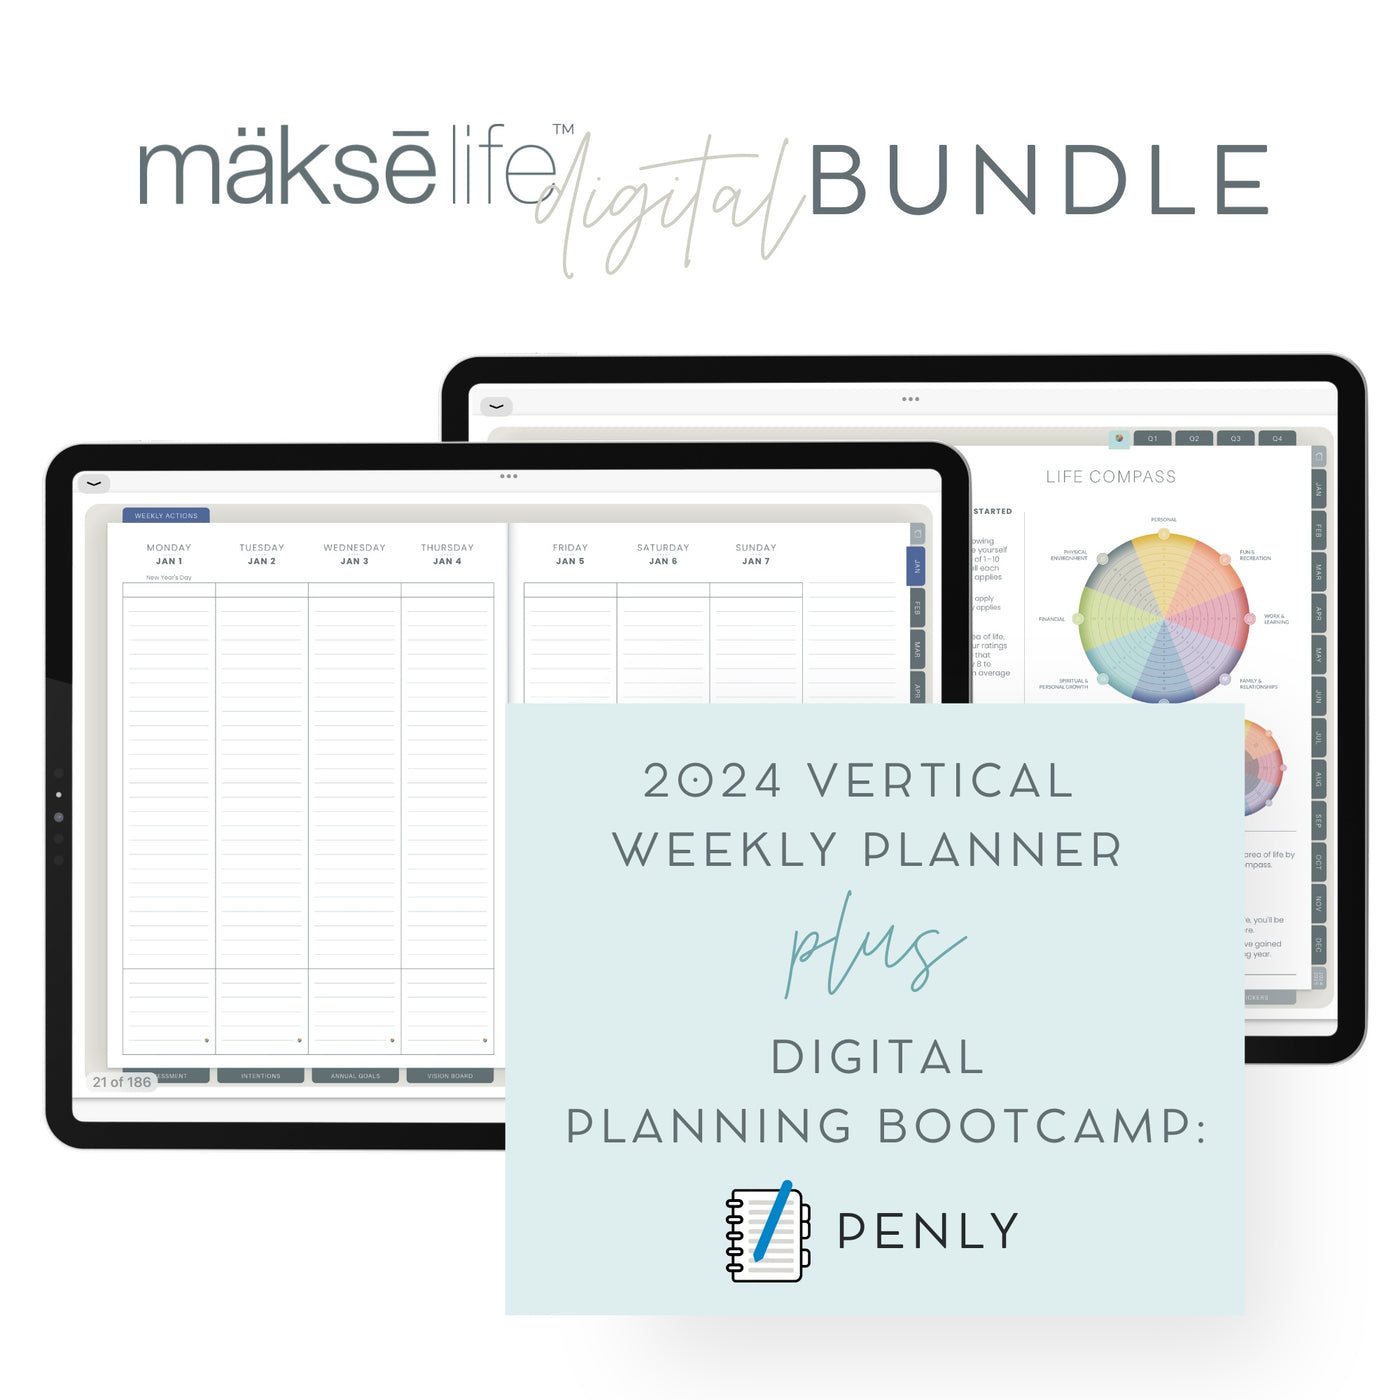 Digital Planning Bundle: Android/Penly + Digital Vertical Weekly Planner